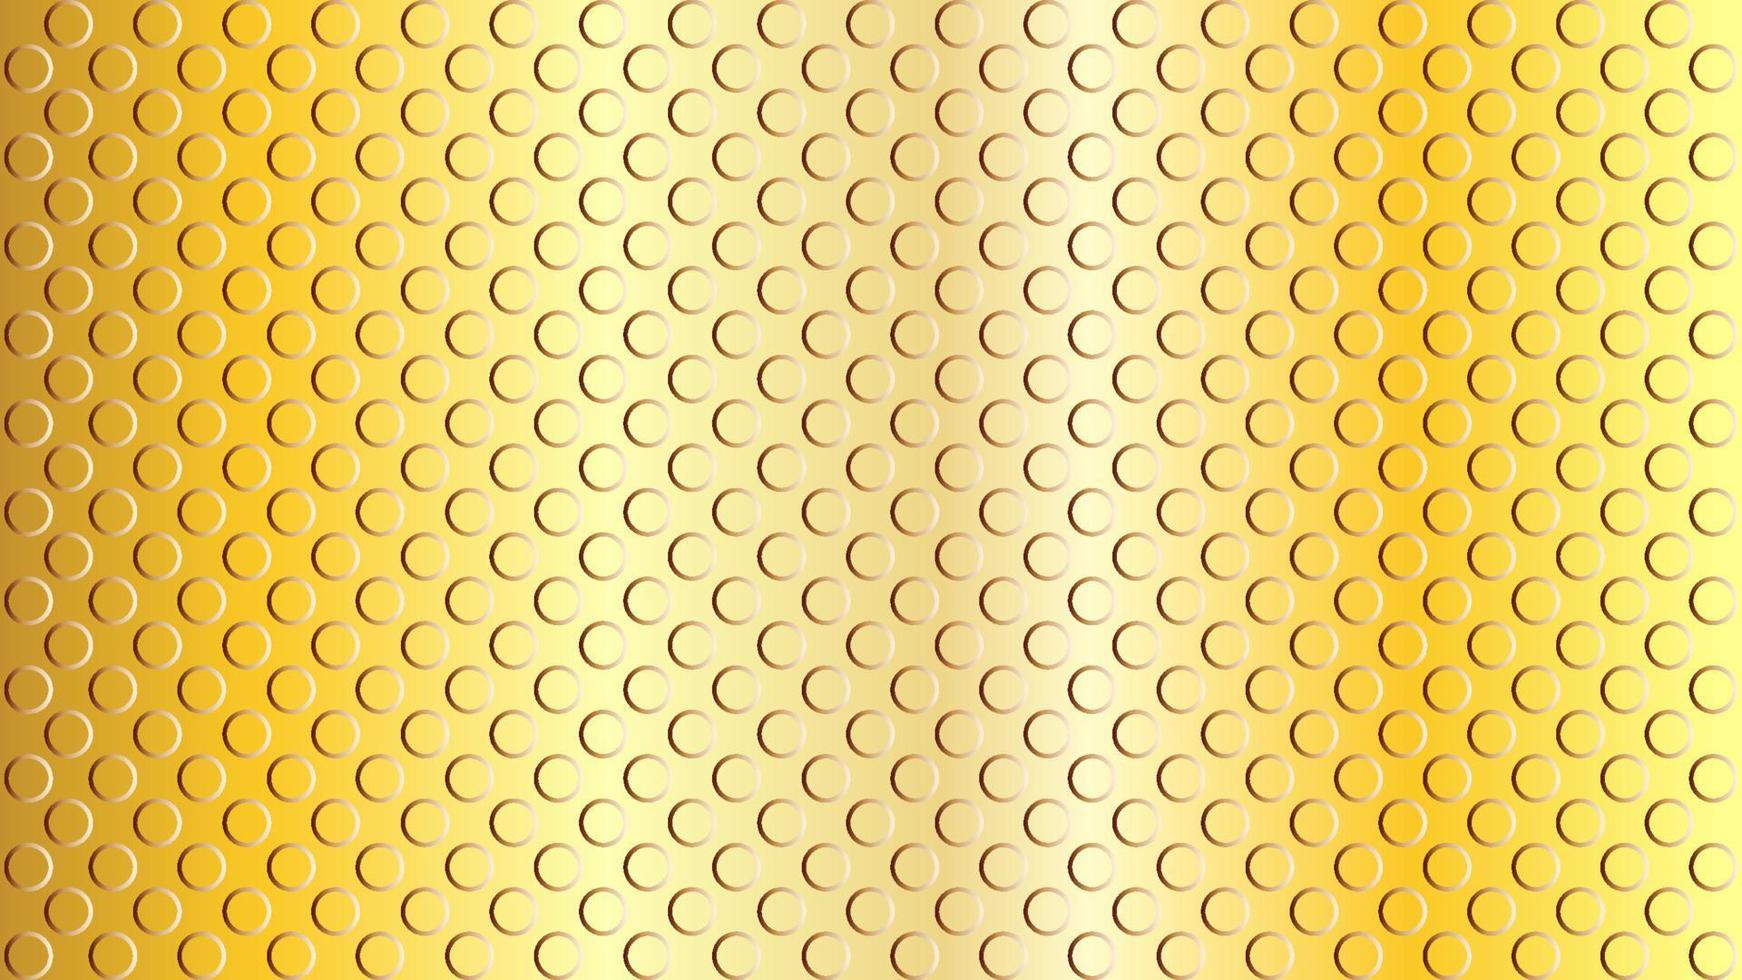 textura plana de puntos dorados en relieve. plantilla de diseño de fondo abstracto. interpretación realista. patrón sin costuras de pelota de golf. vector